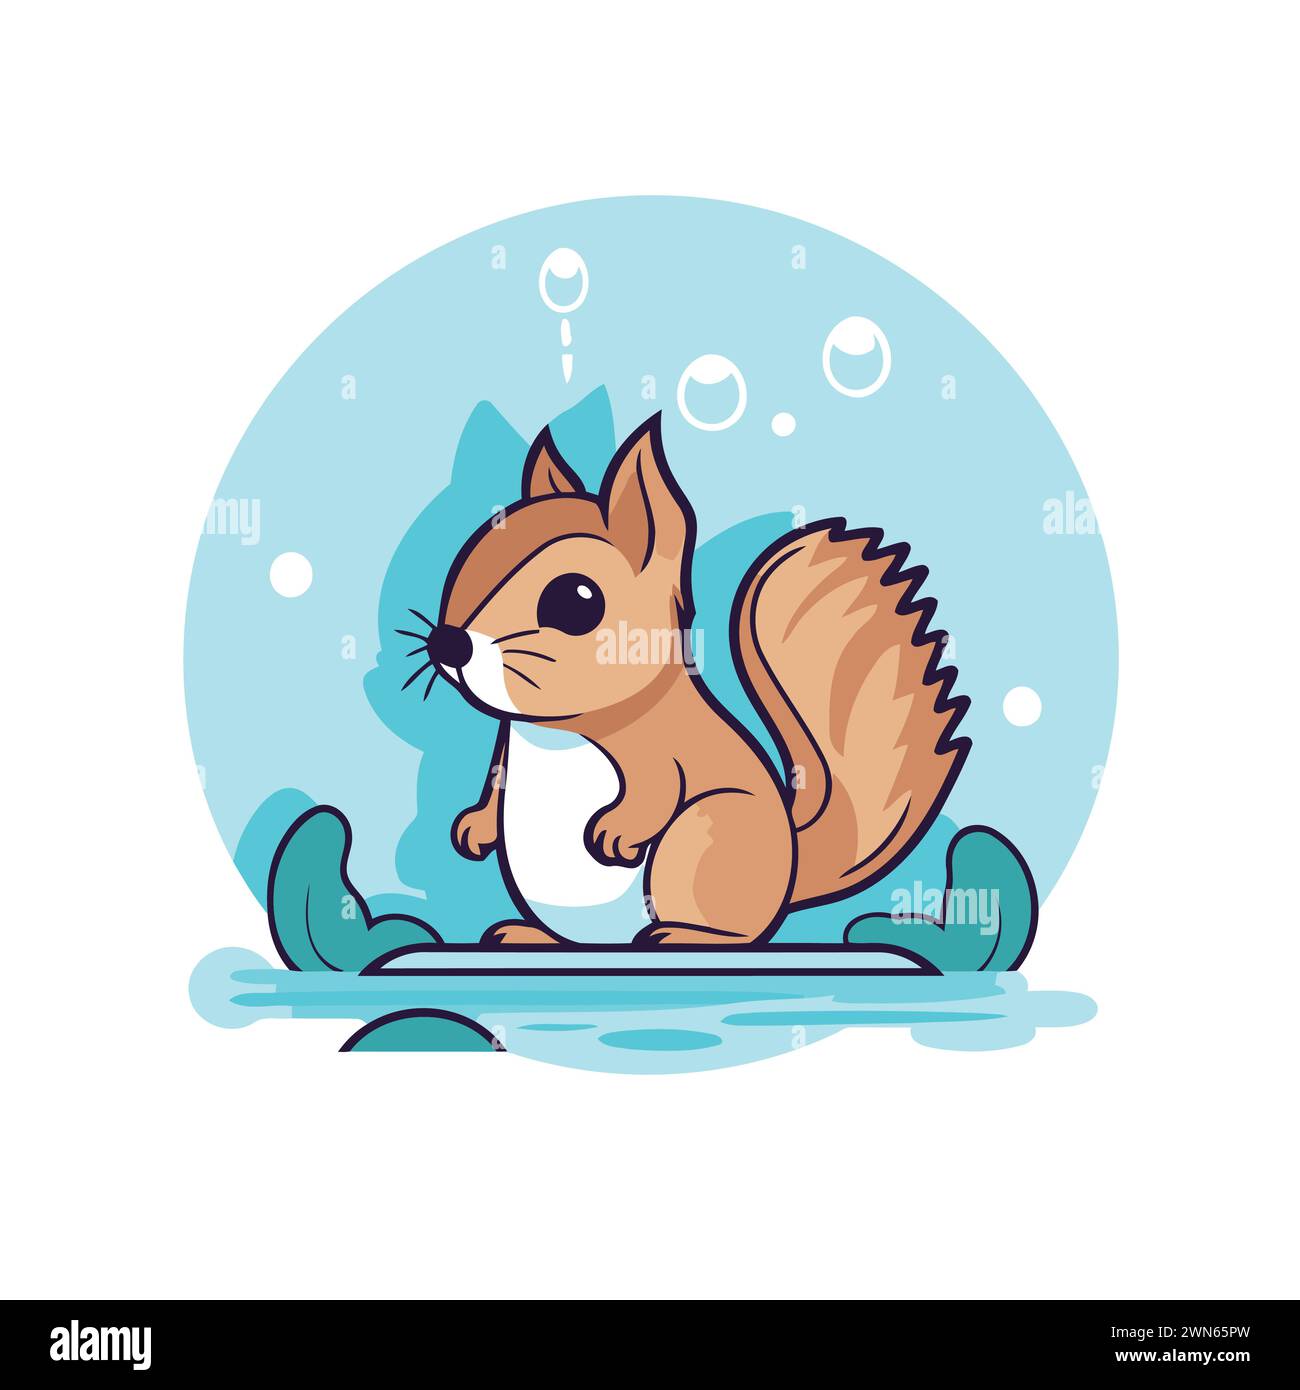 Eichhörnchen Zeichentrickfigur. Vektor-Illustration eines süßen kleinen Chipmunks. Stock Vektor